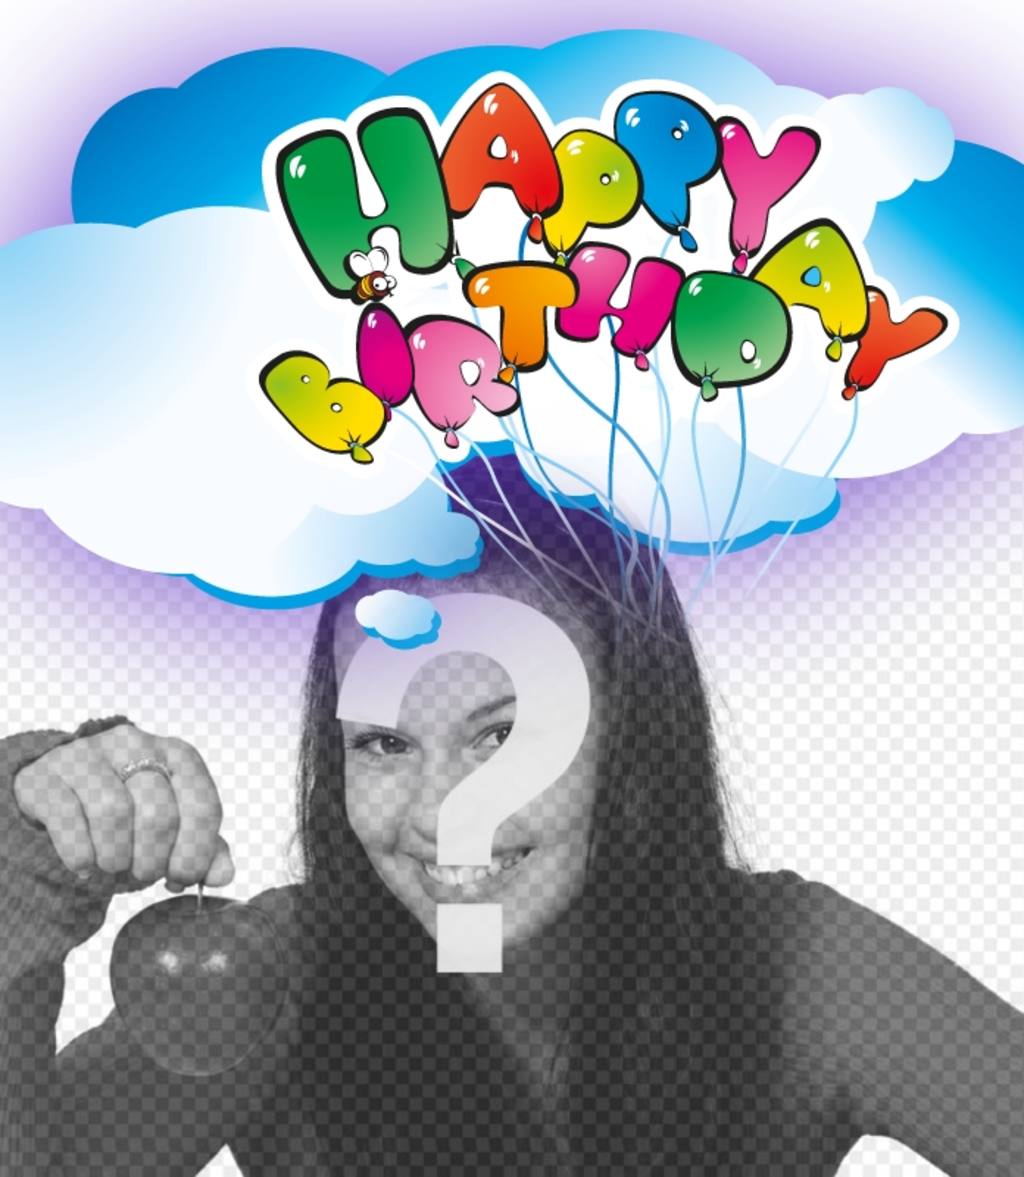 Postal de felicitación de cumpleaños de Happy birthday con globos. ..